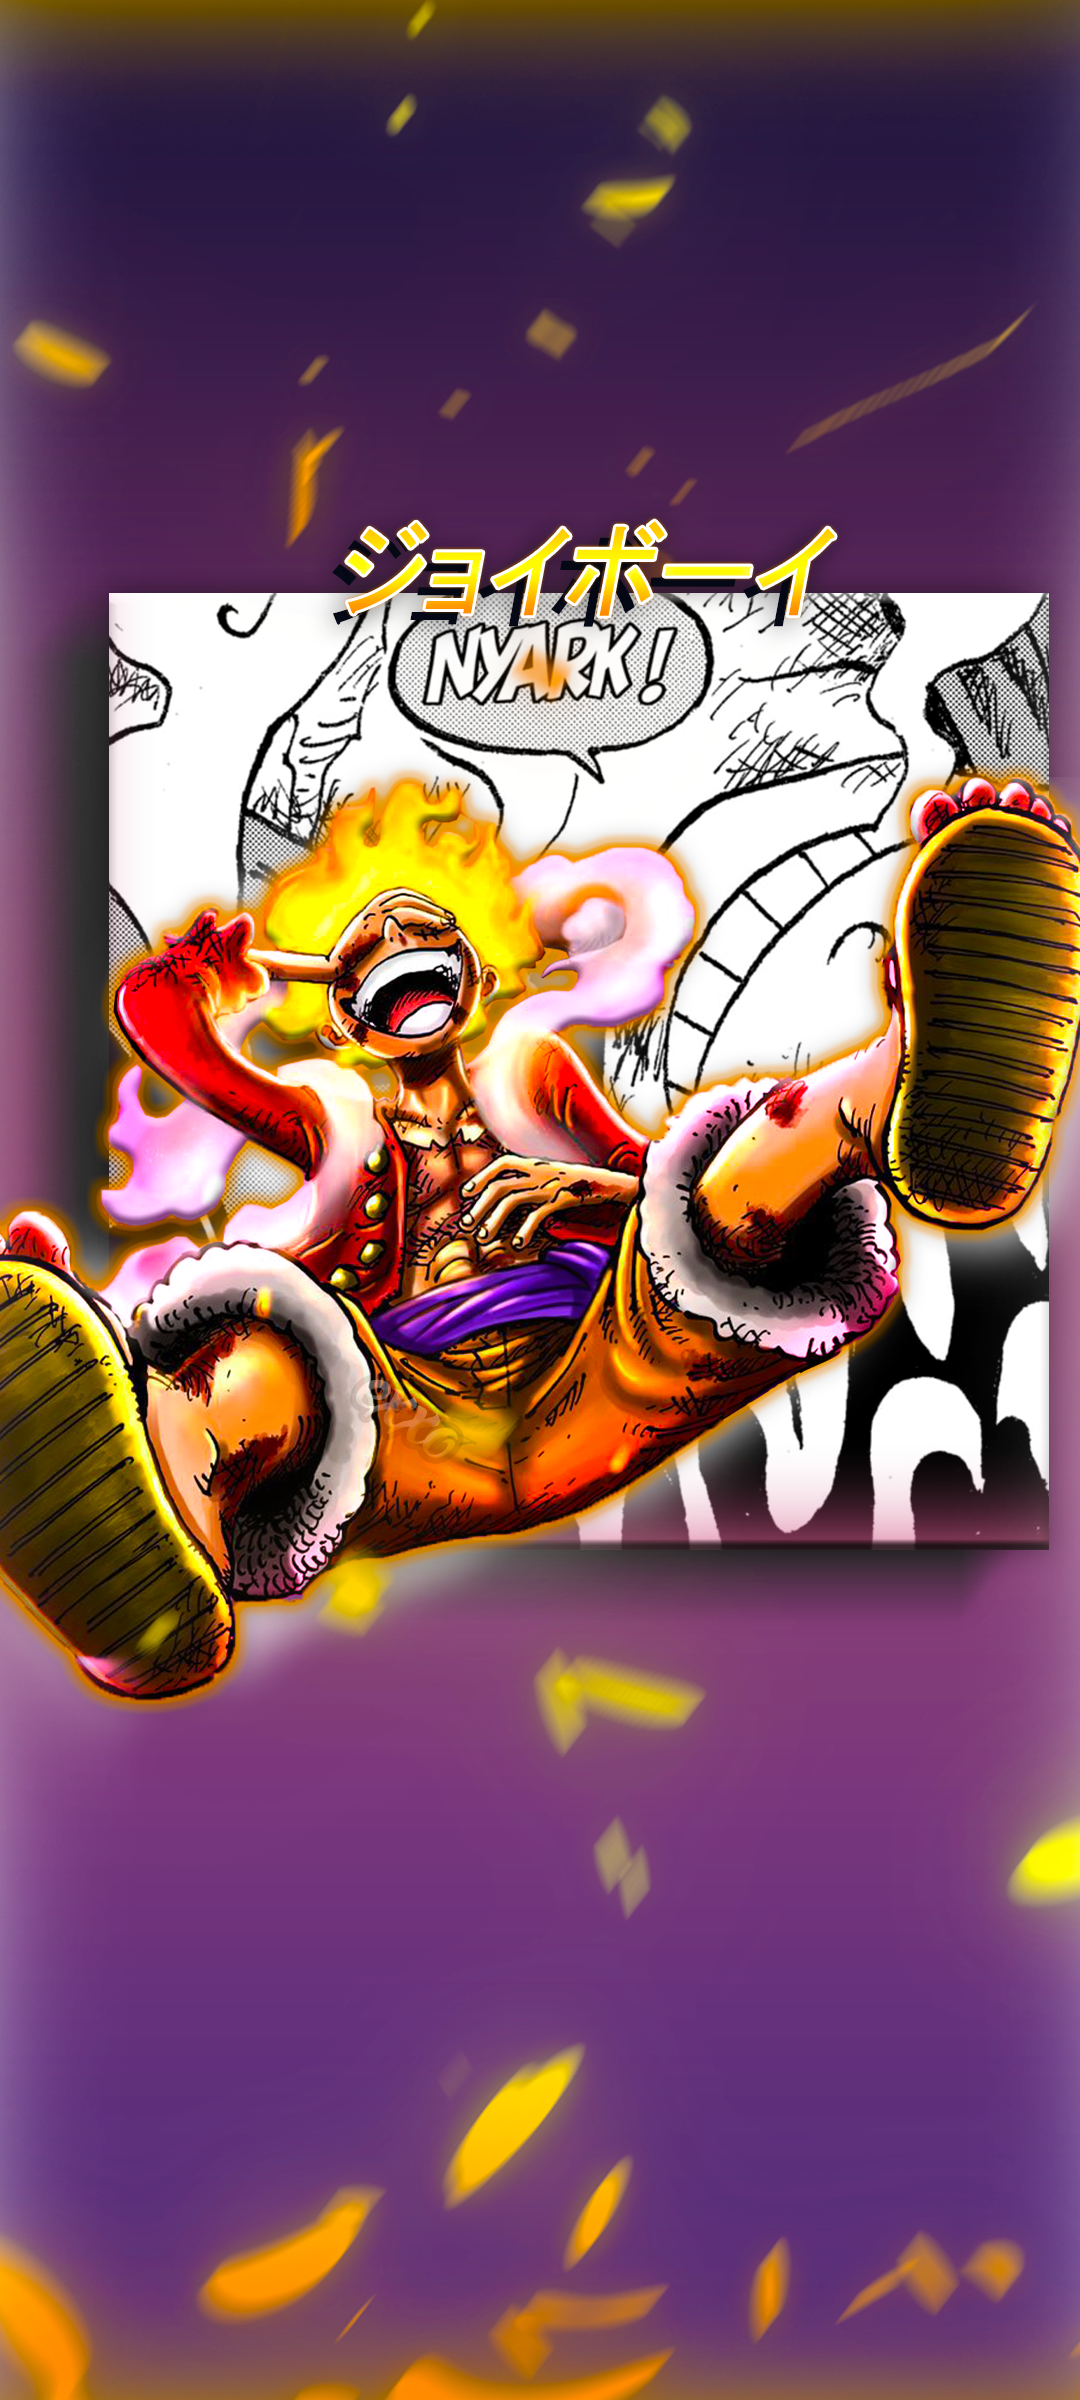 Đặc biệt dành cho những fan của Luffy, Monkey D. Luffy Gear 5 là một trong những nhân vật ấn tượng nhất trong One Piece. Hãy thưởng thức các hình ảnh về anh ta trong trang phục mới và sức mạnh mới nhất của mình.